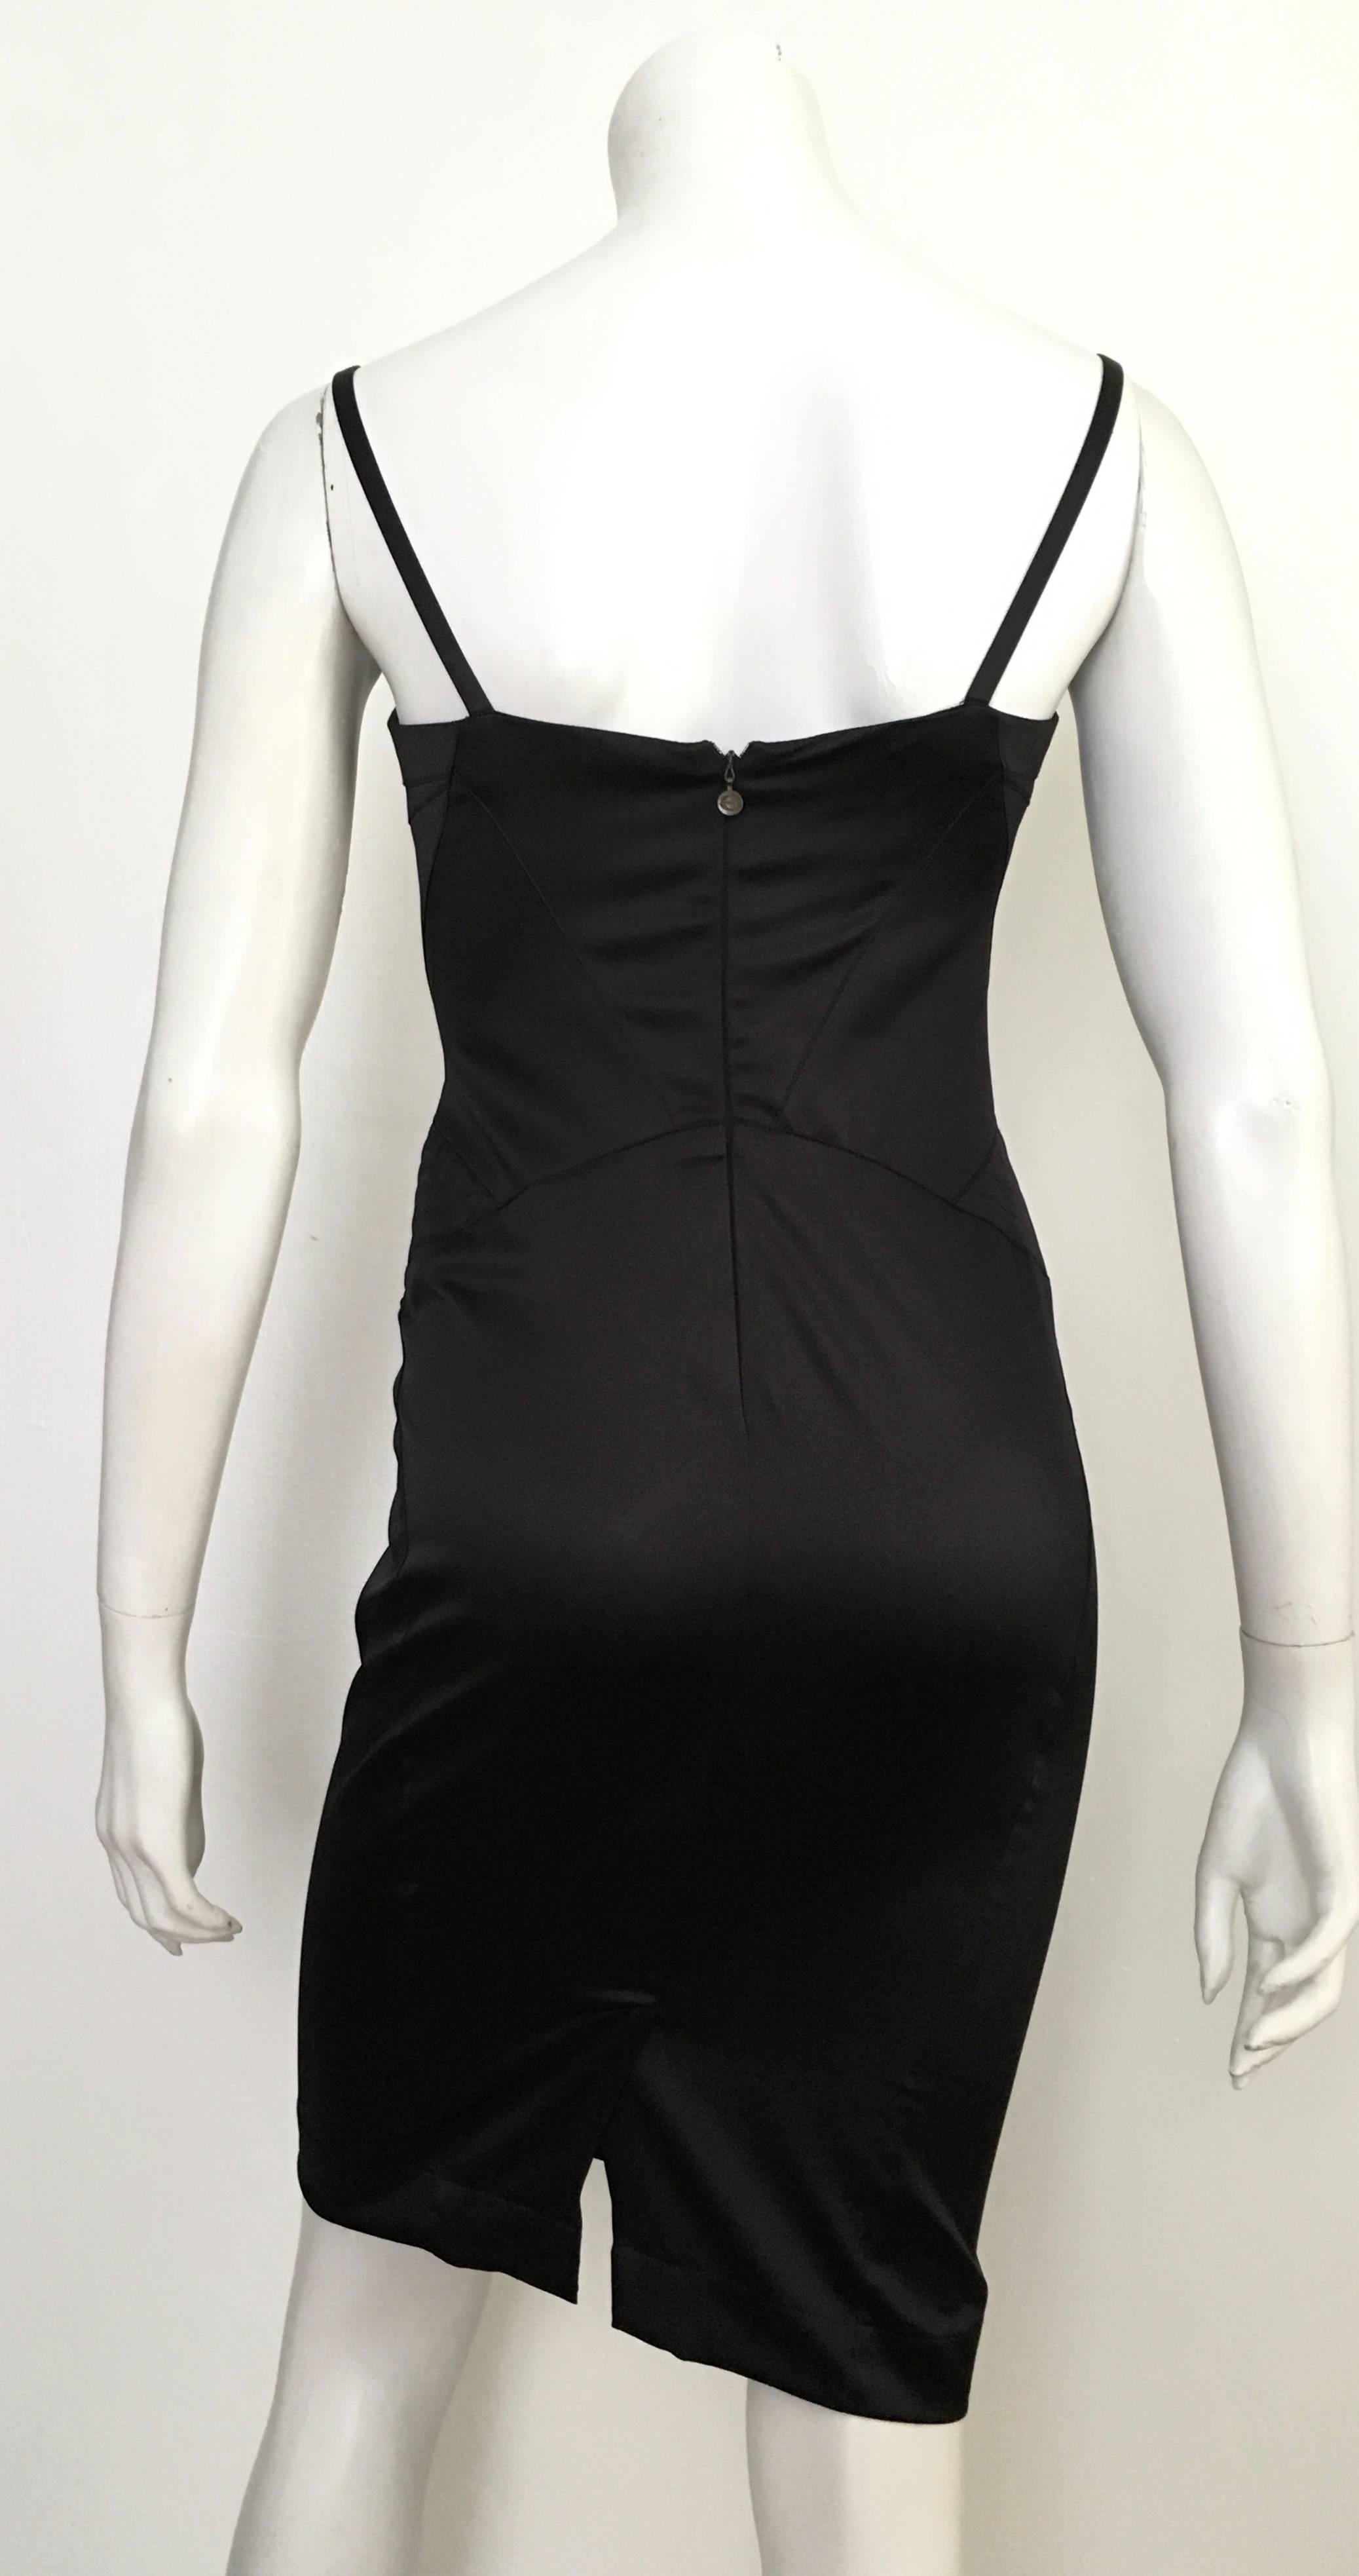 Women's Cavalli Black Stretch Dress Size 4.